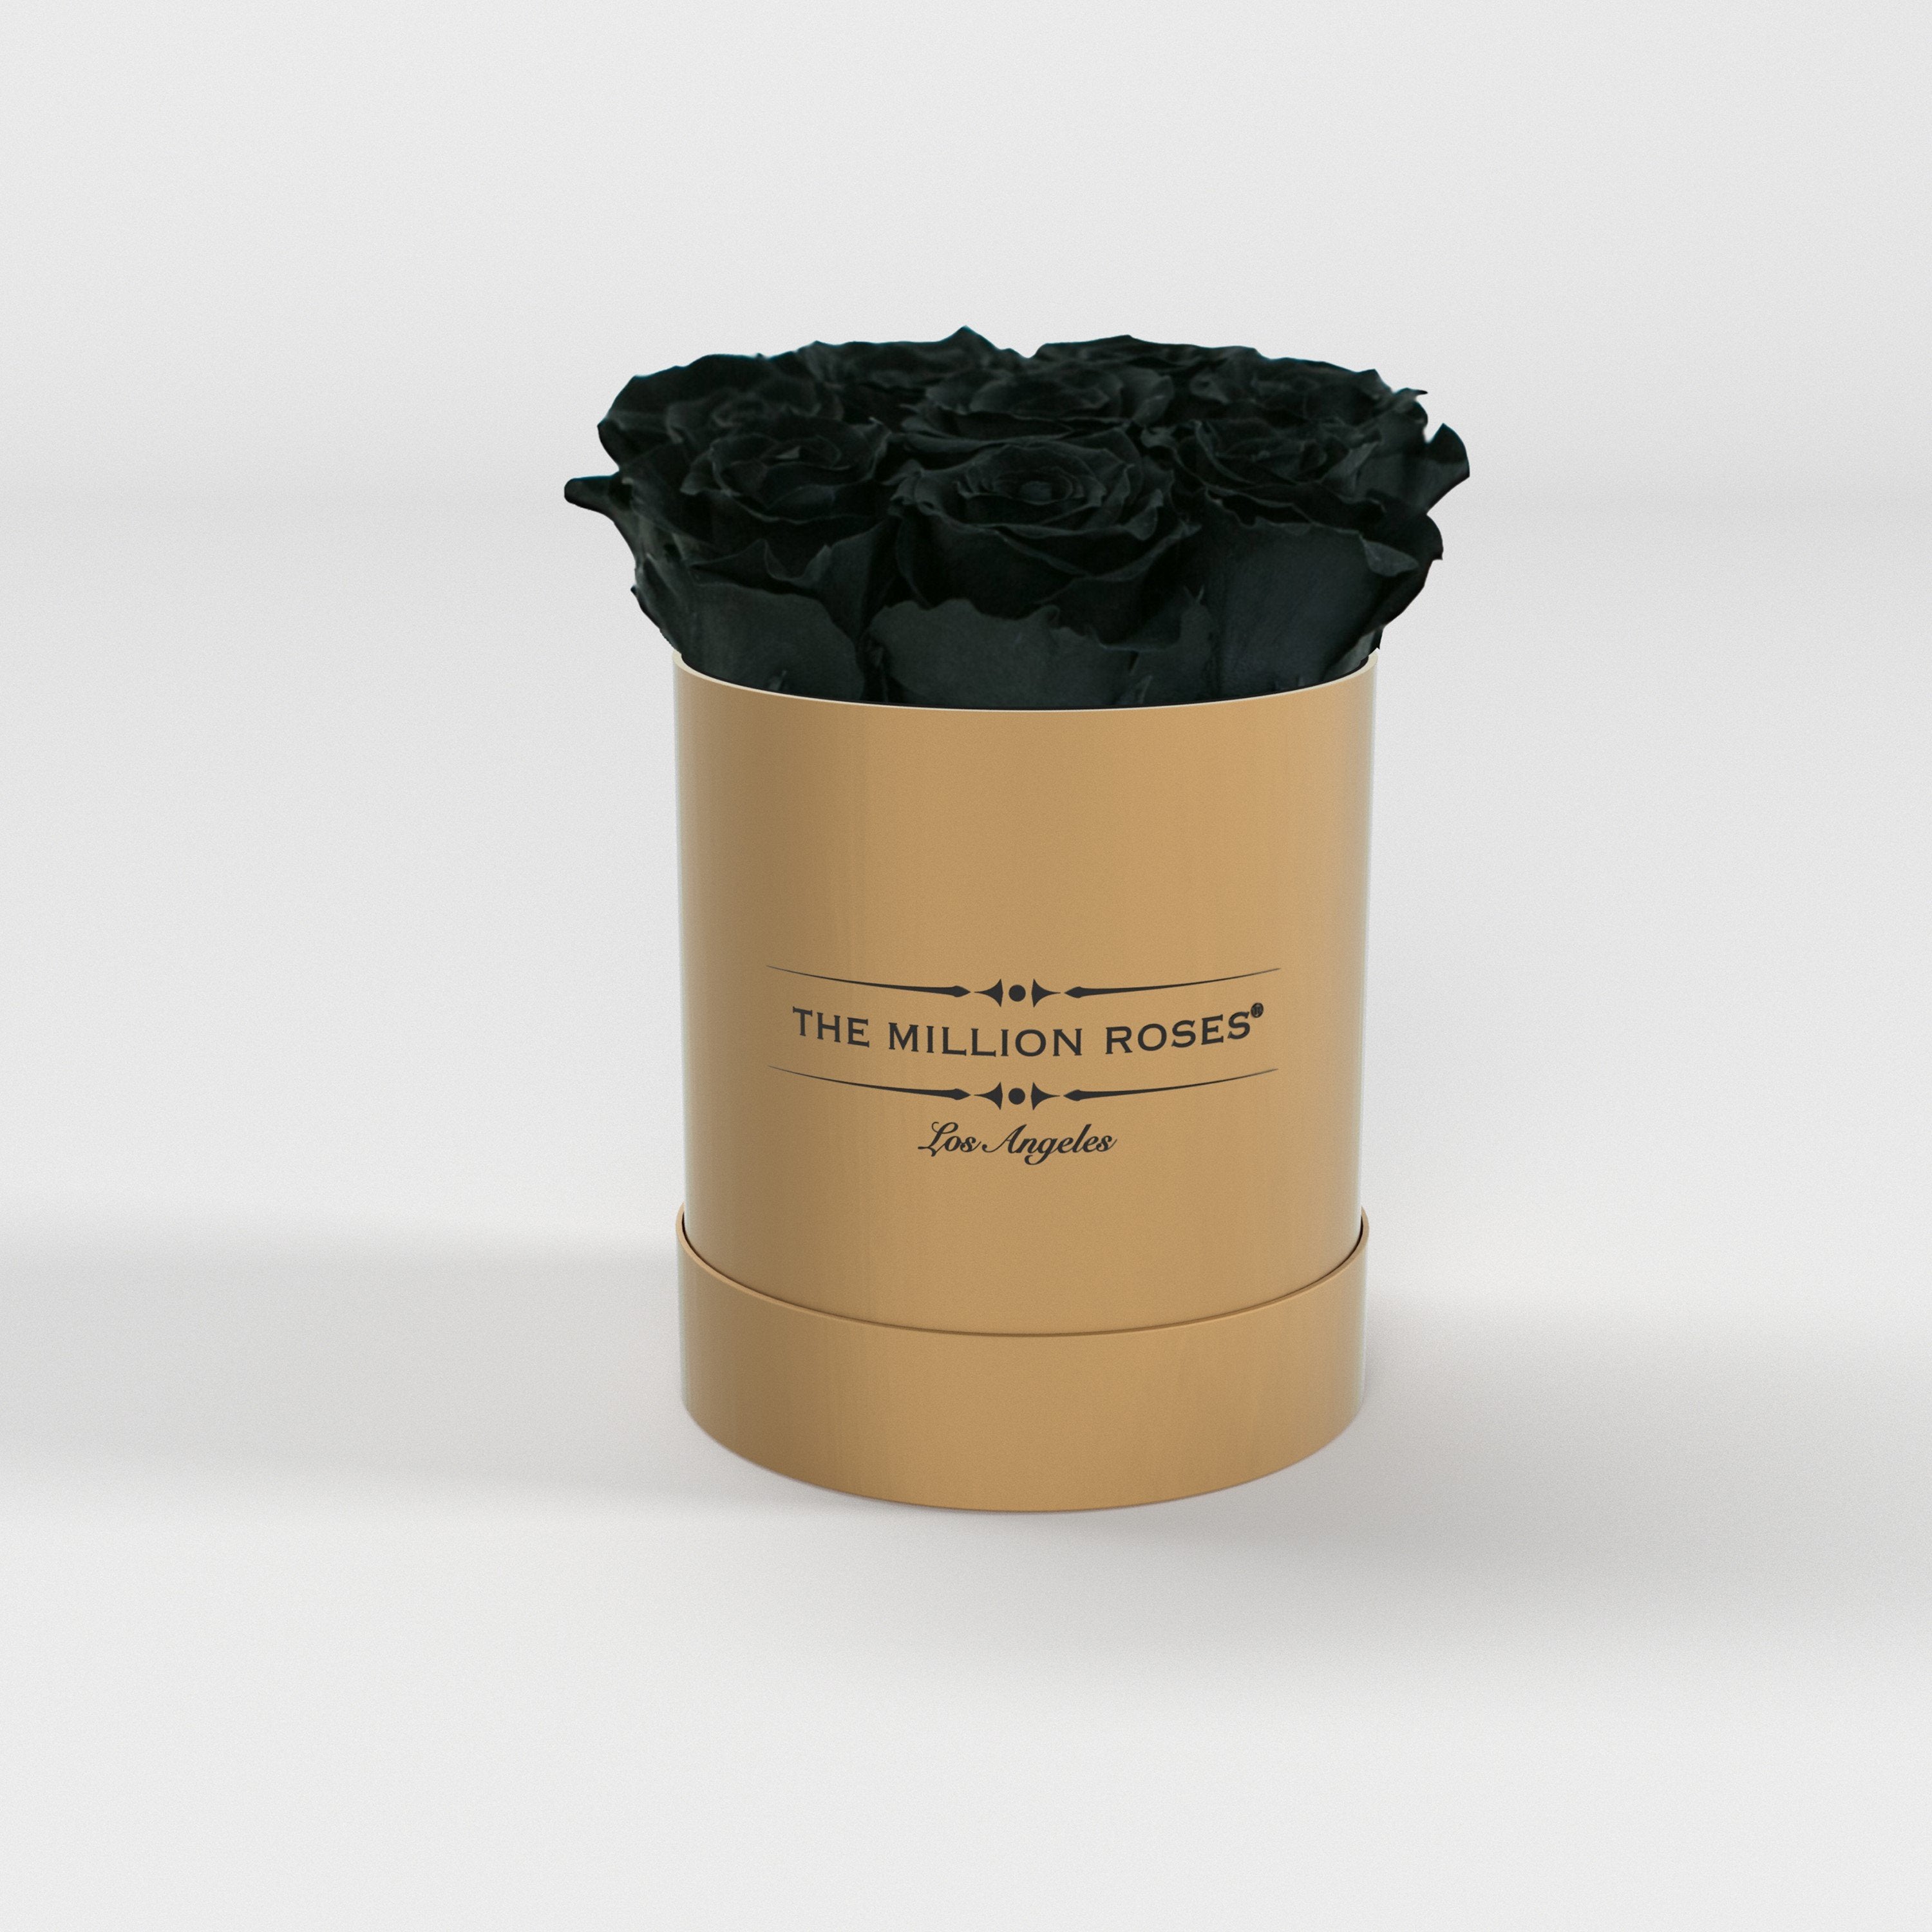 ( LA ) Gold - Basic Box with Black Roses